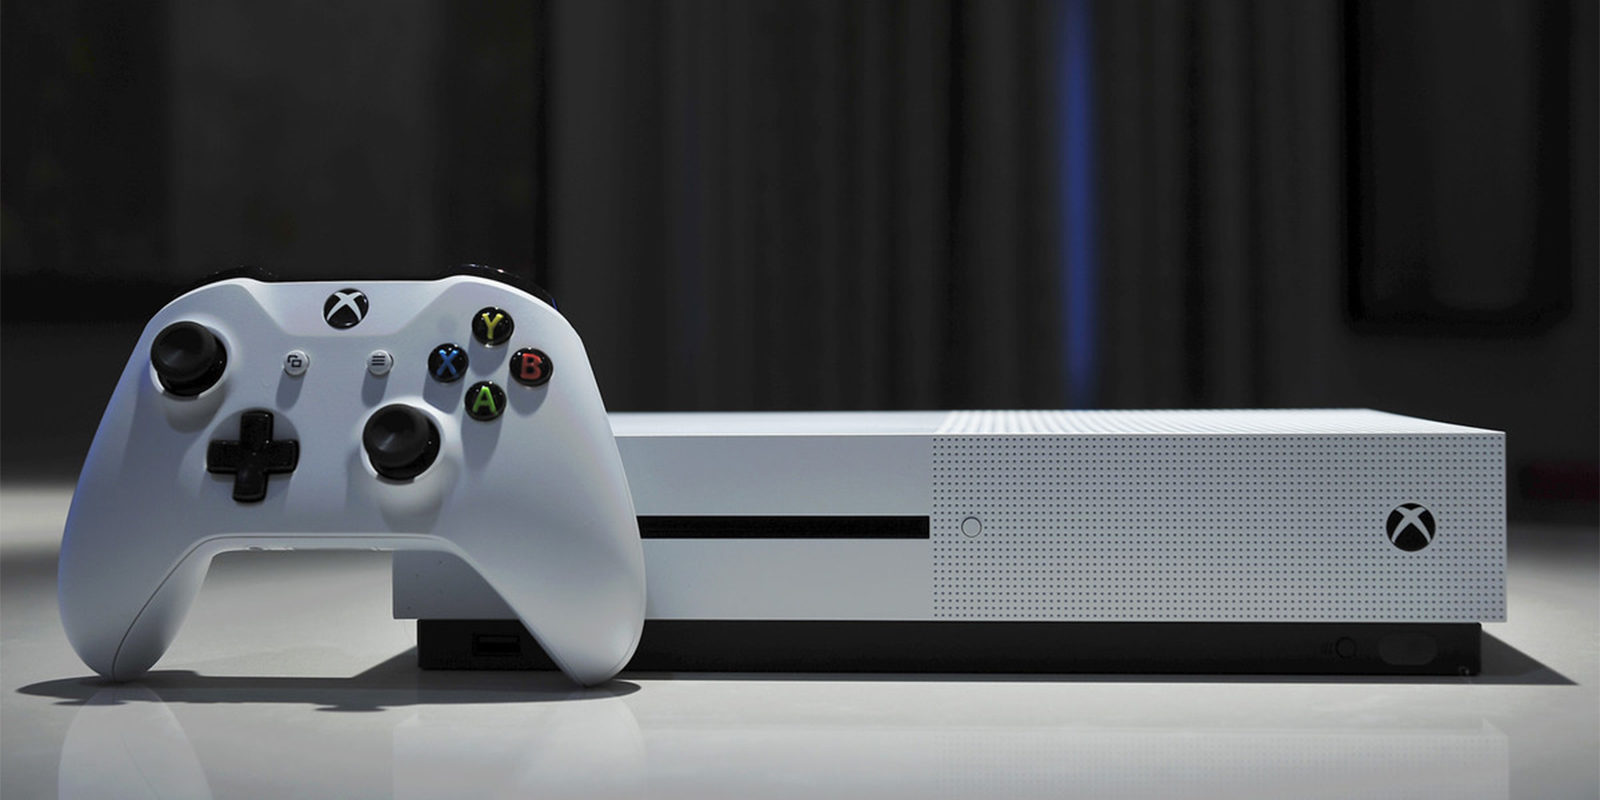 Ya puedes instalar aplicaciones de forma remota en Xbox One desde la Windows Store